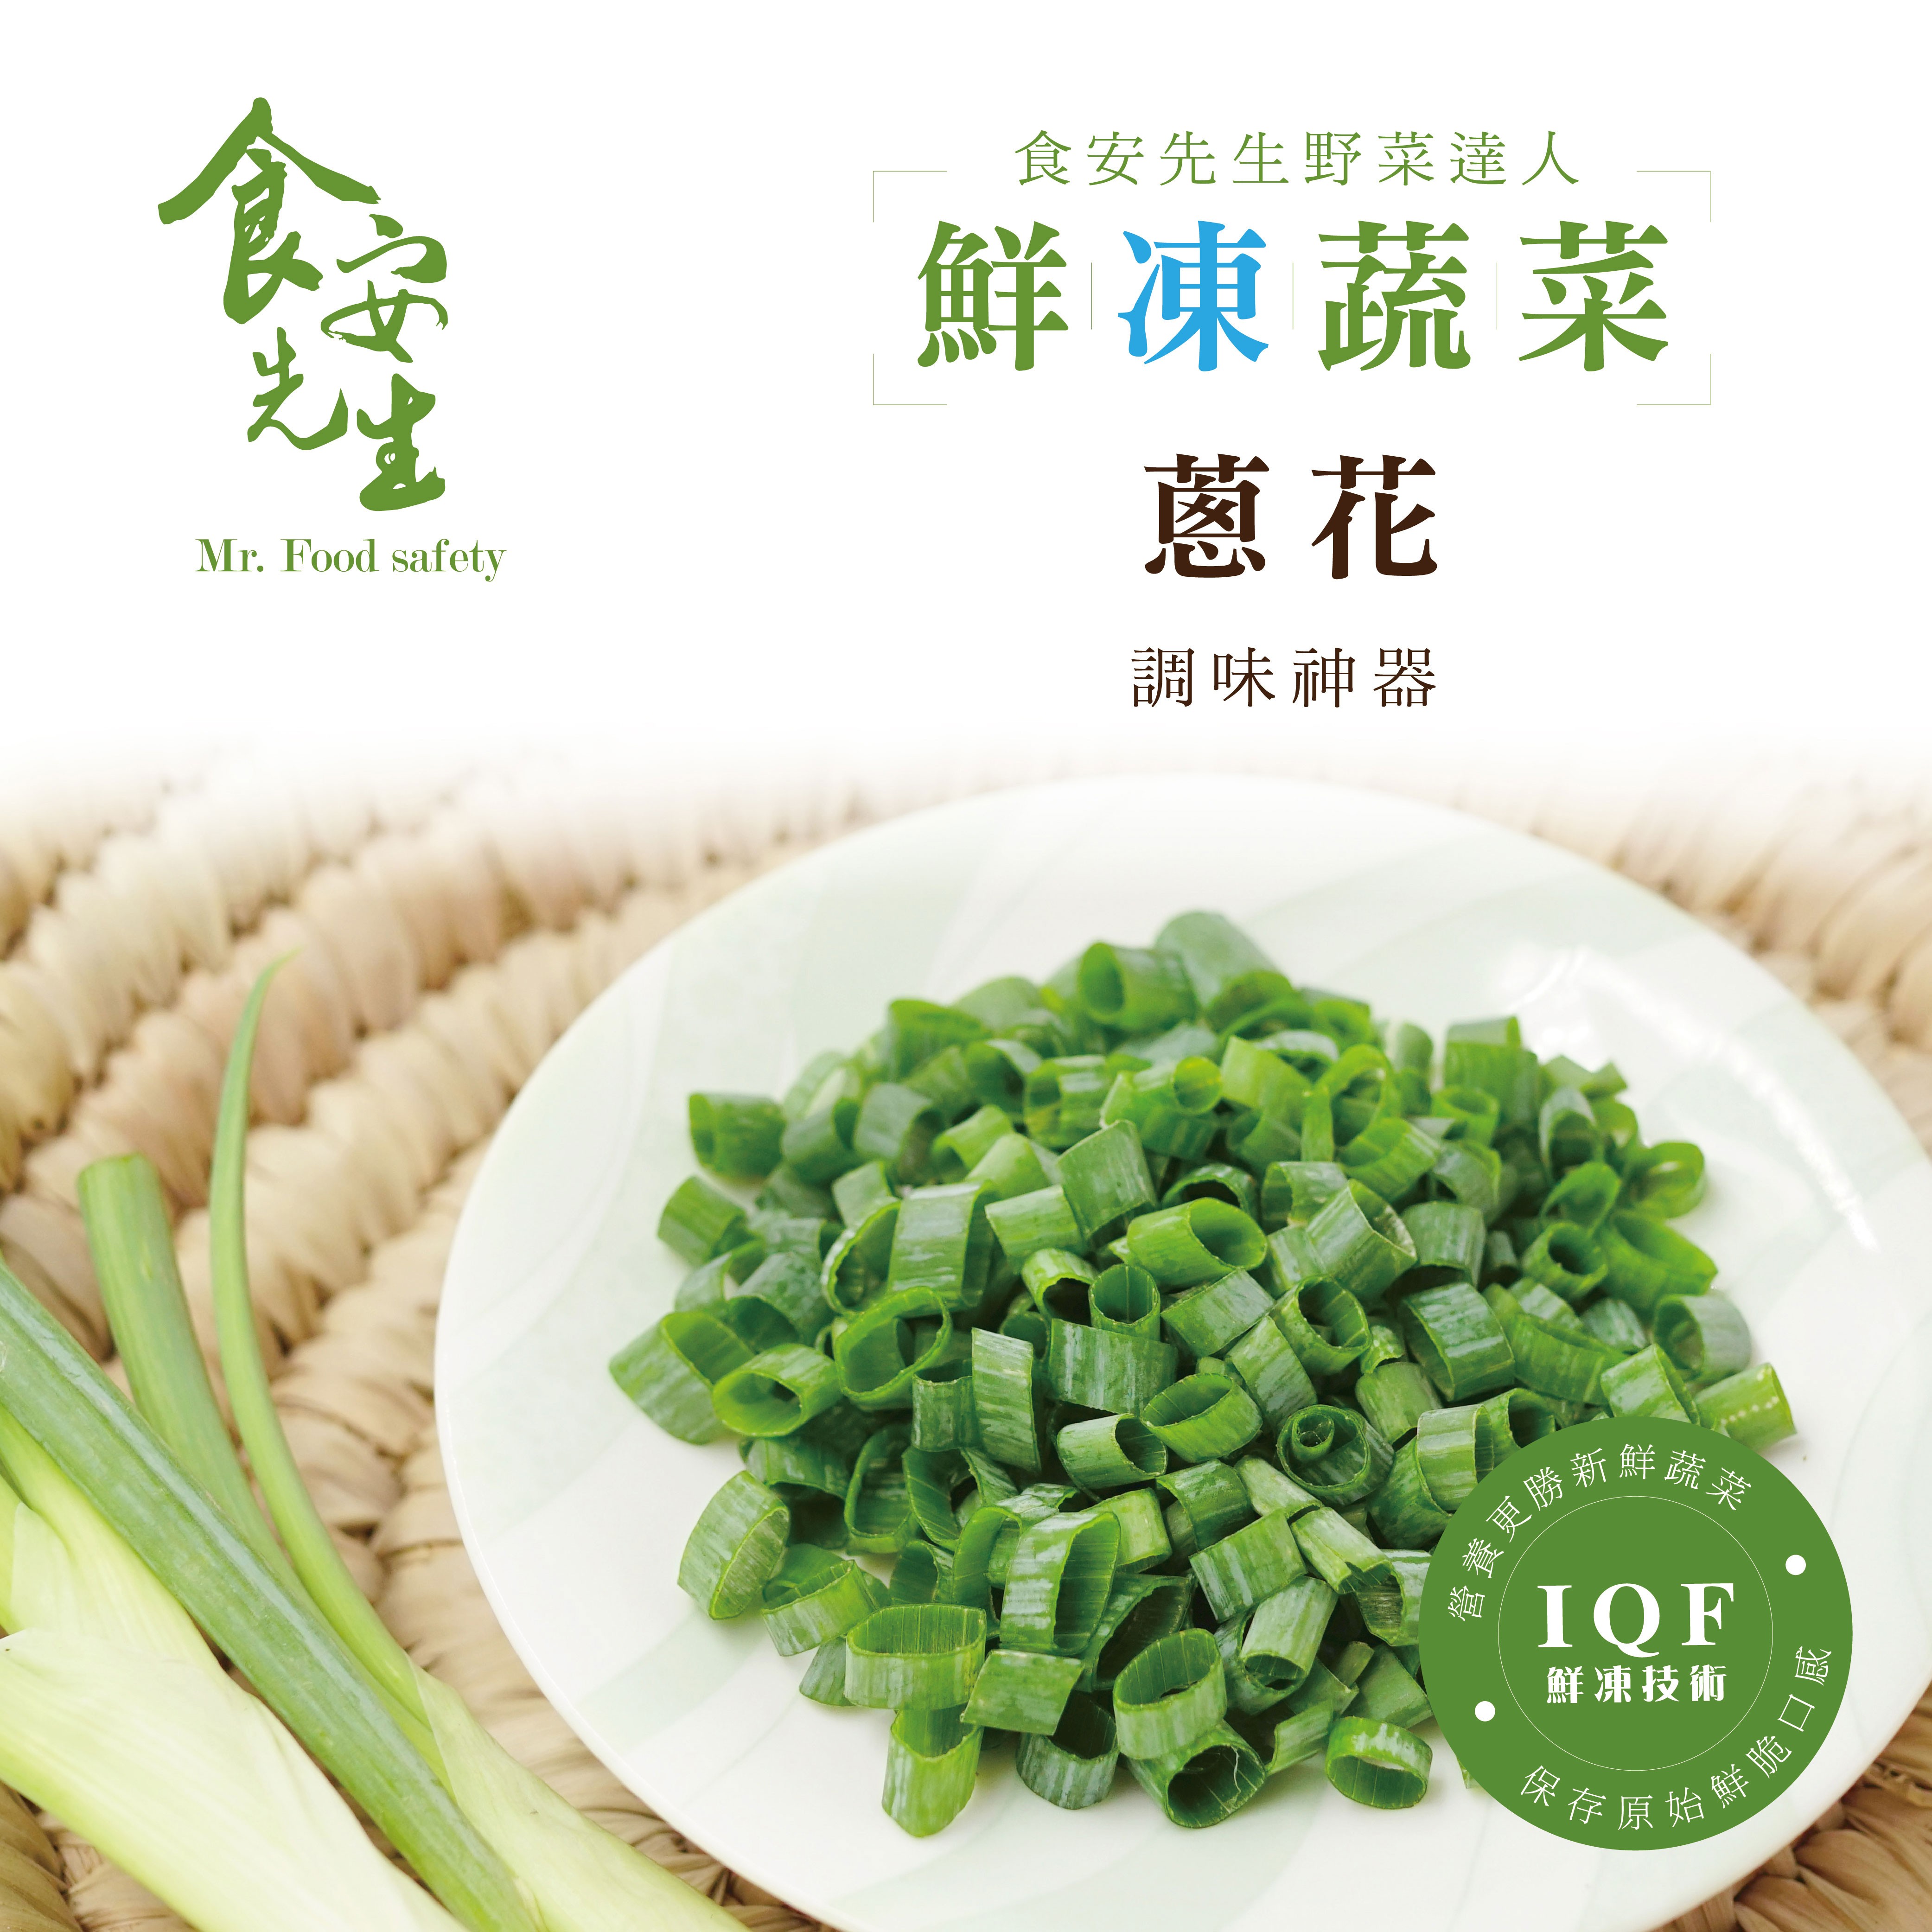 【鮮凍蔬食】青蔥_200克/包